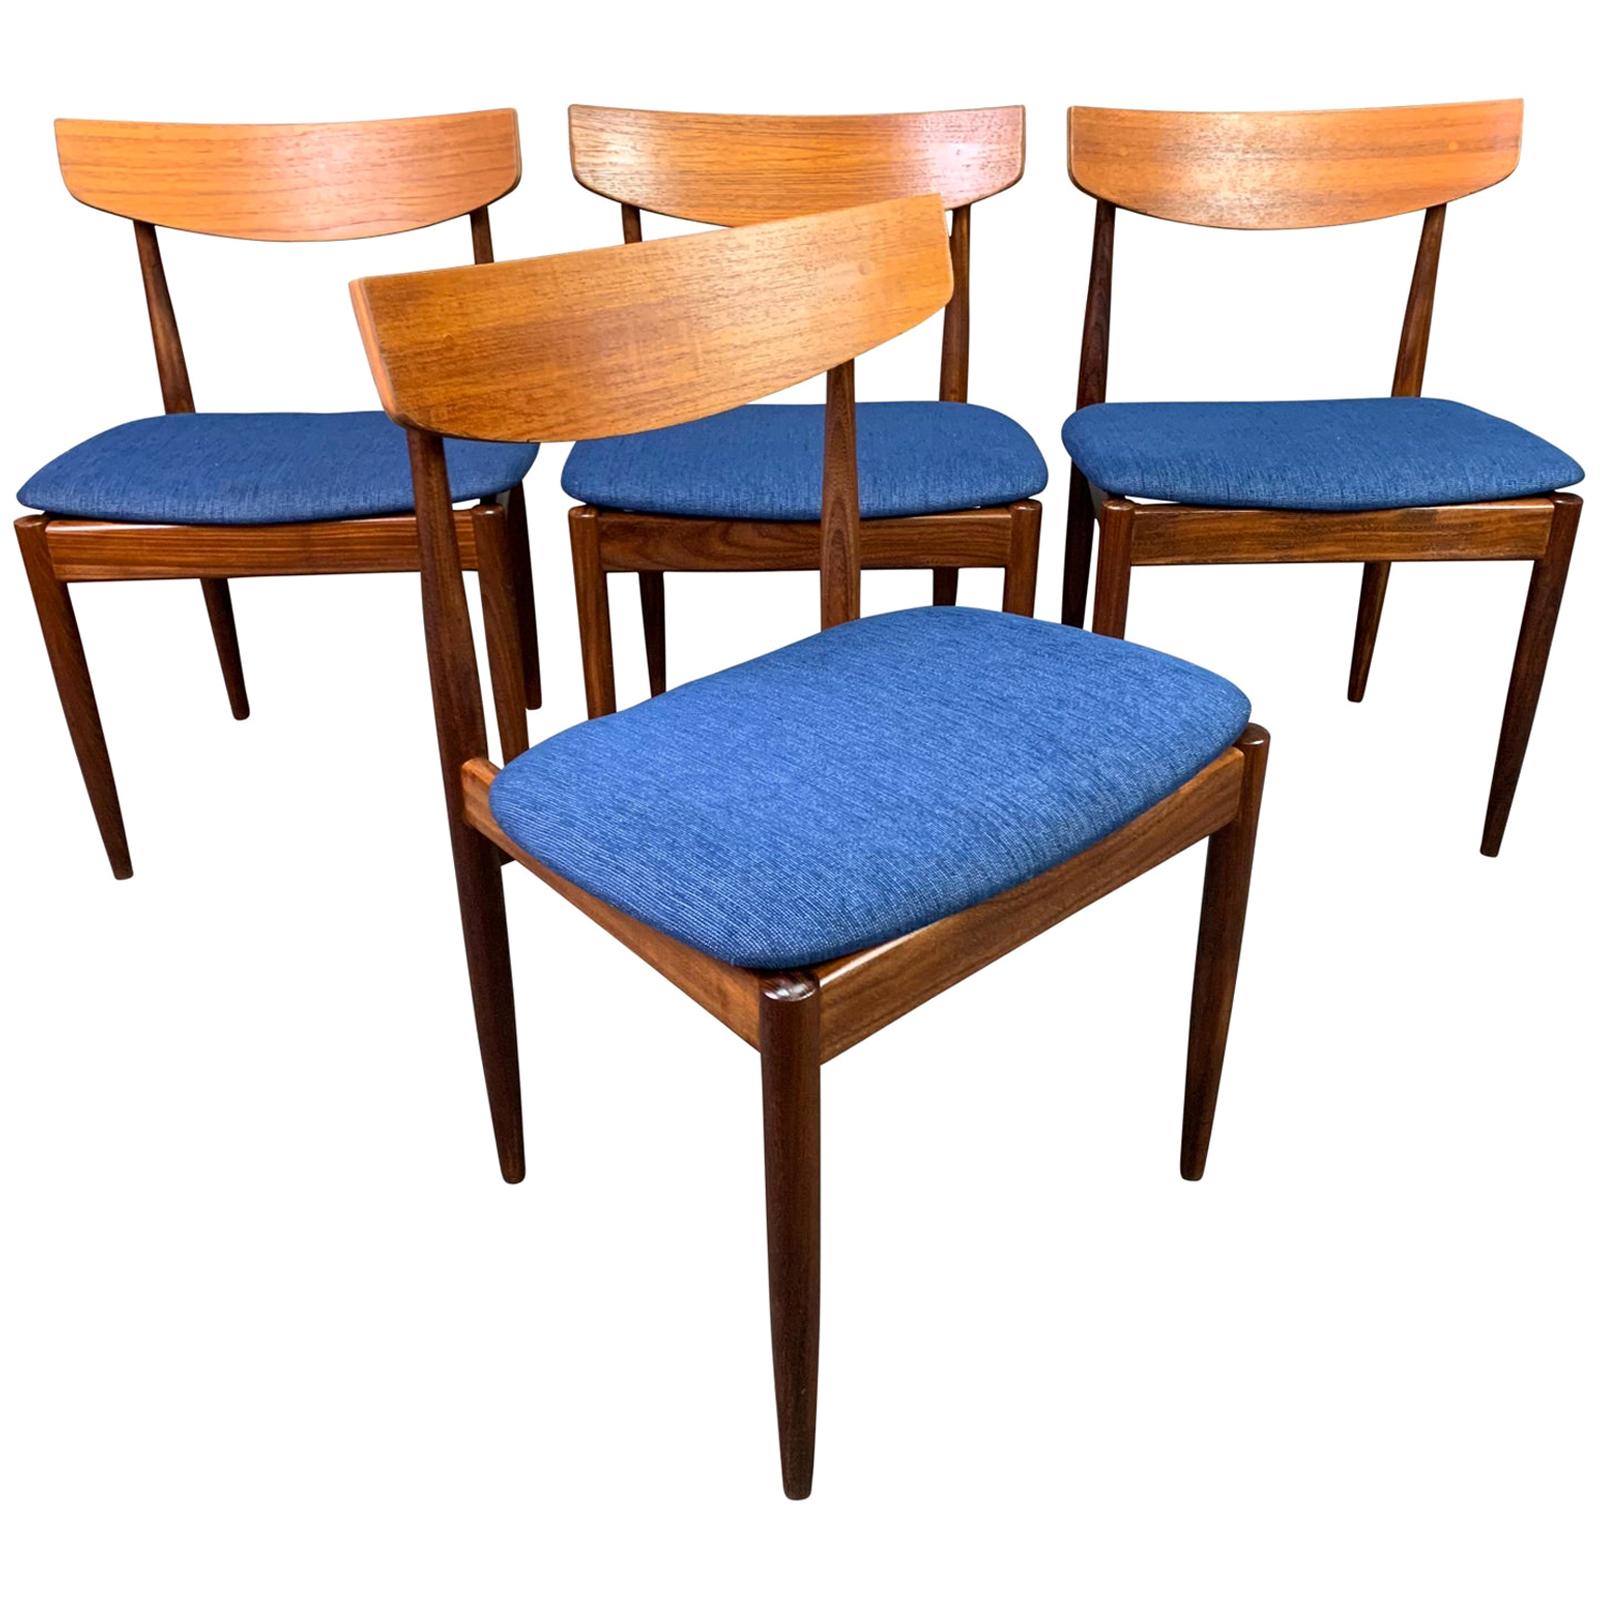 Set of 4 Vintage British Midcentury Teak Dining Chairs by Kofod Larsen & G Plan